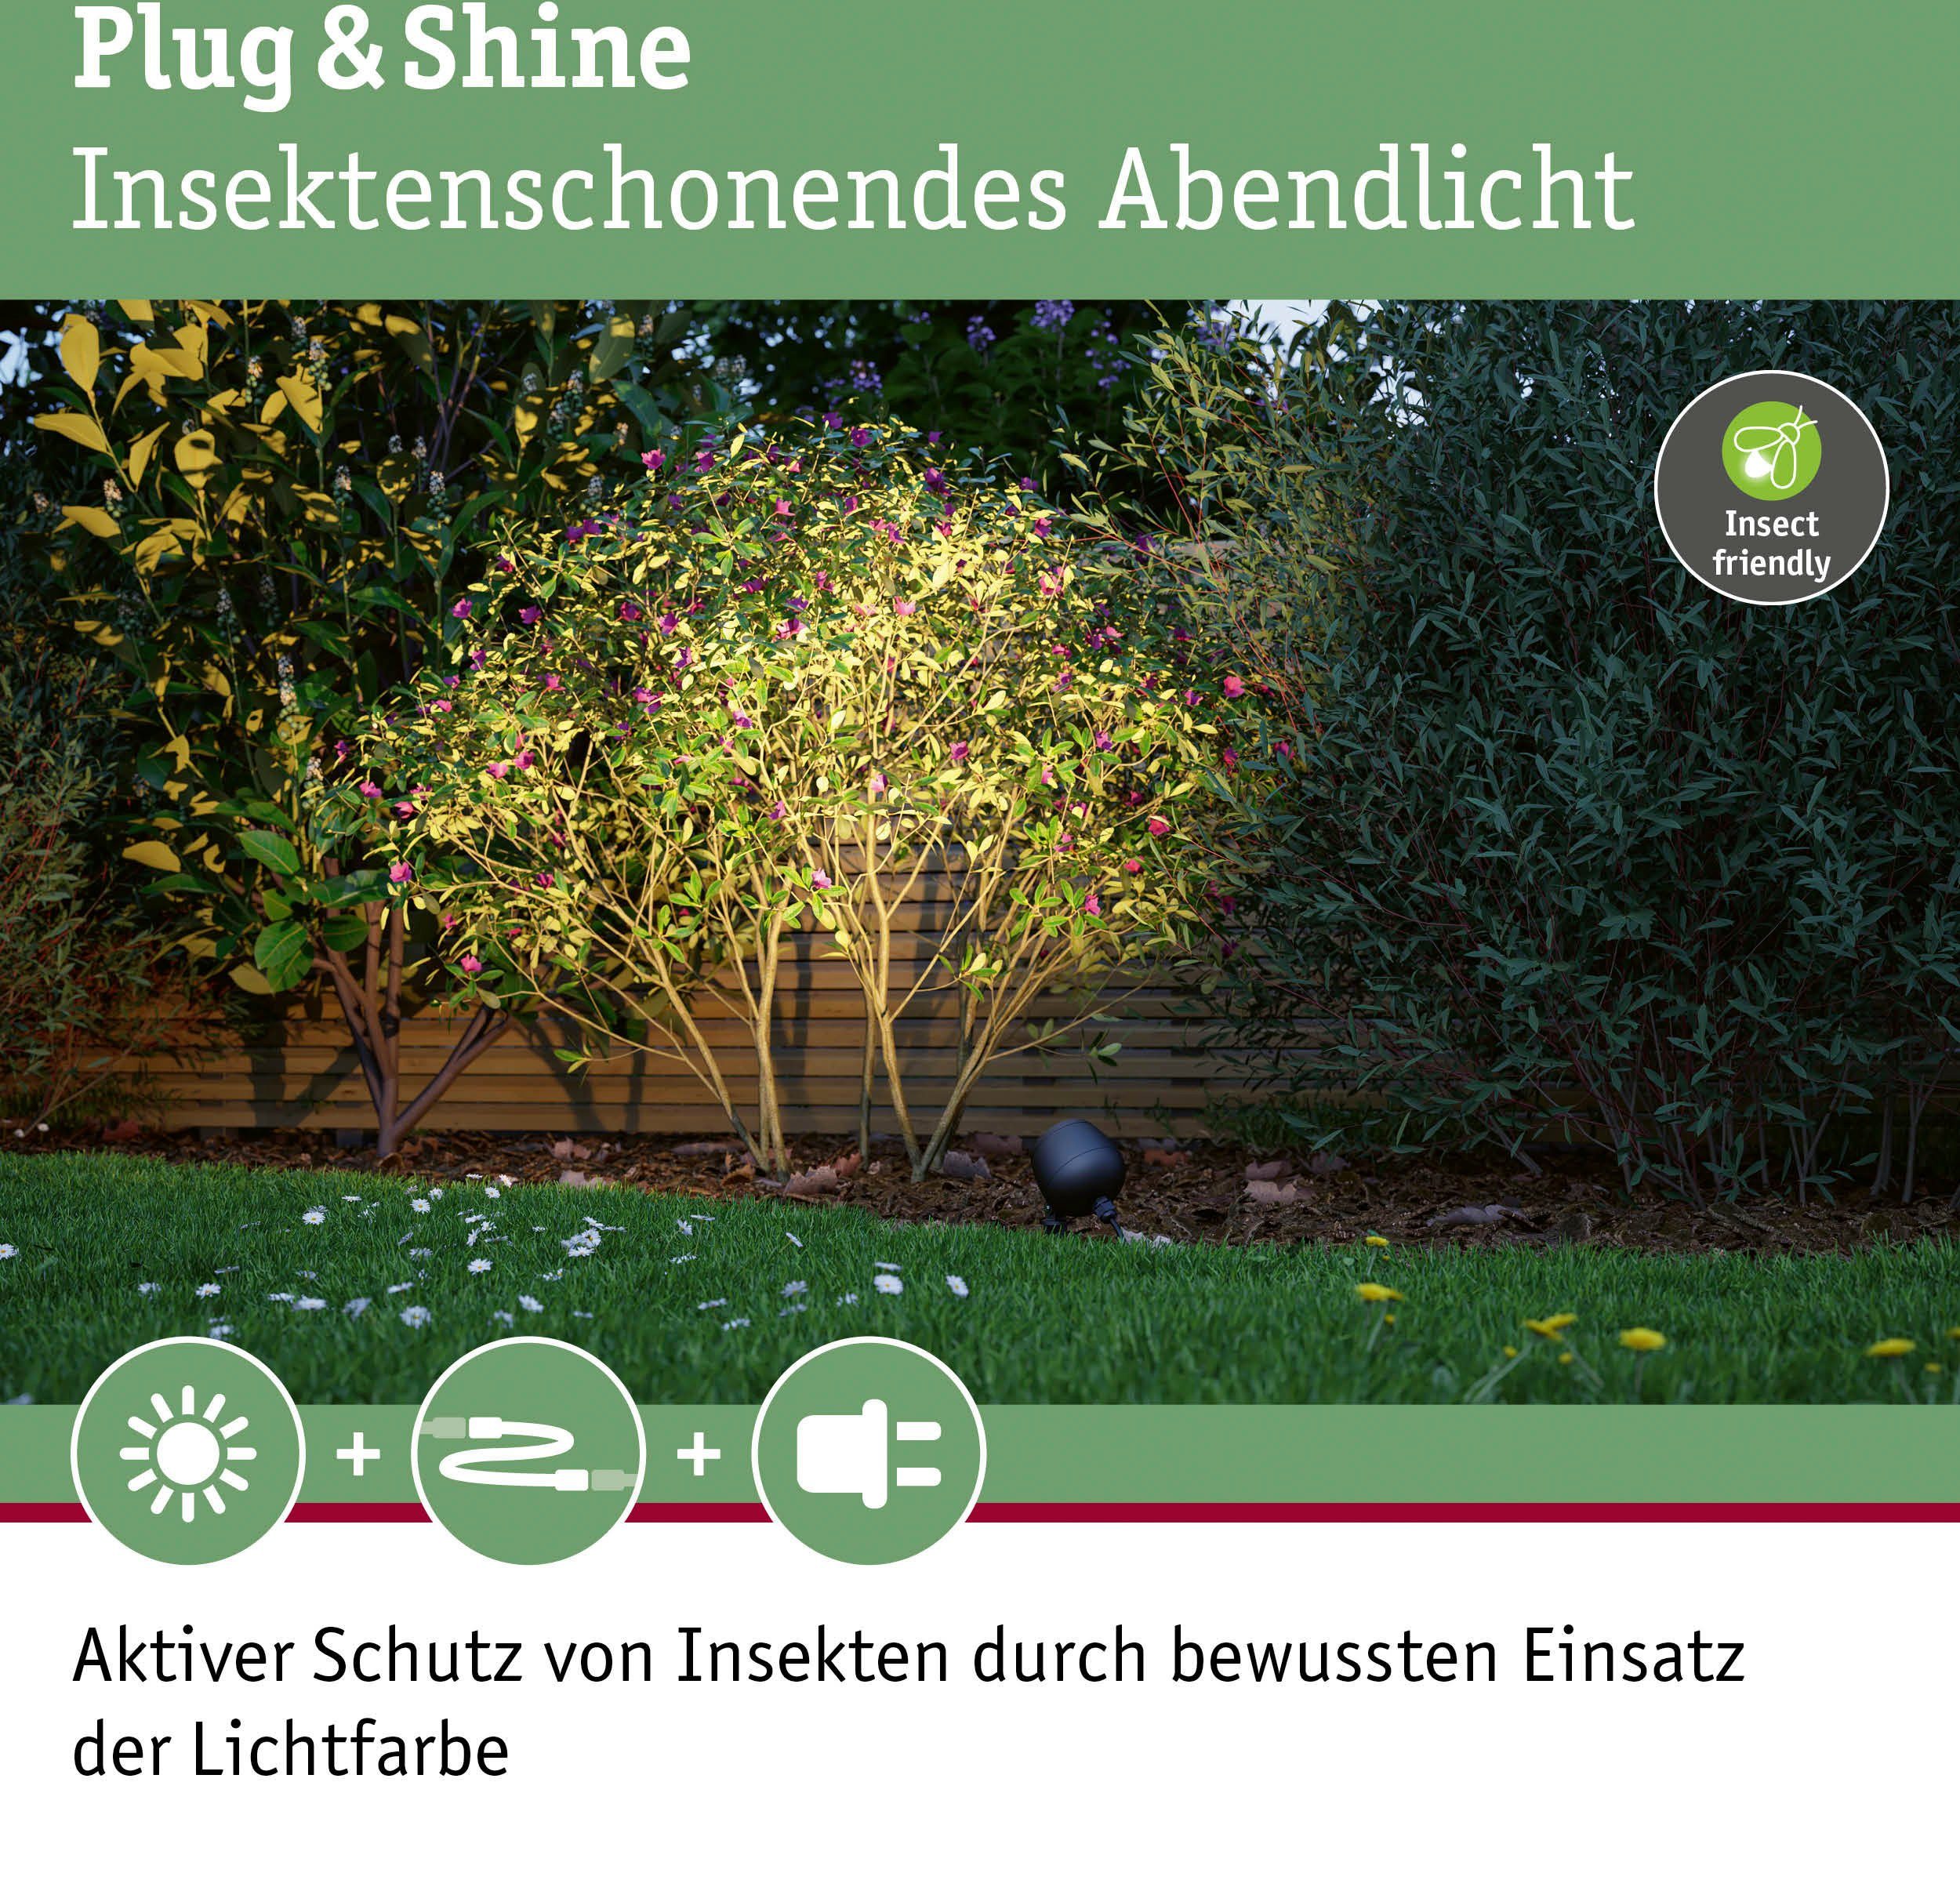 Paulmann LED Gartenleuchte fest Plug Insektenfreundlich Warmweiß, Spot & Outdoor integriert, Shine ZigBee, friendly LED Insect Kikolo